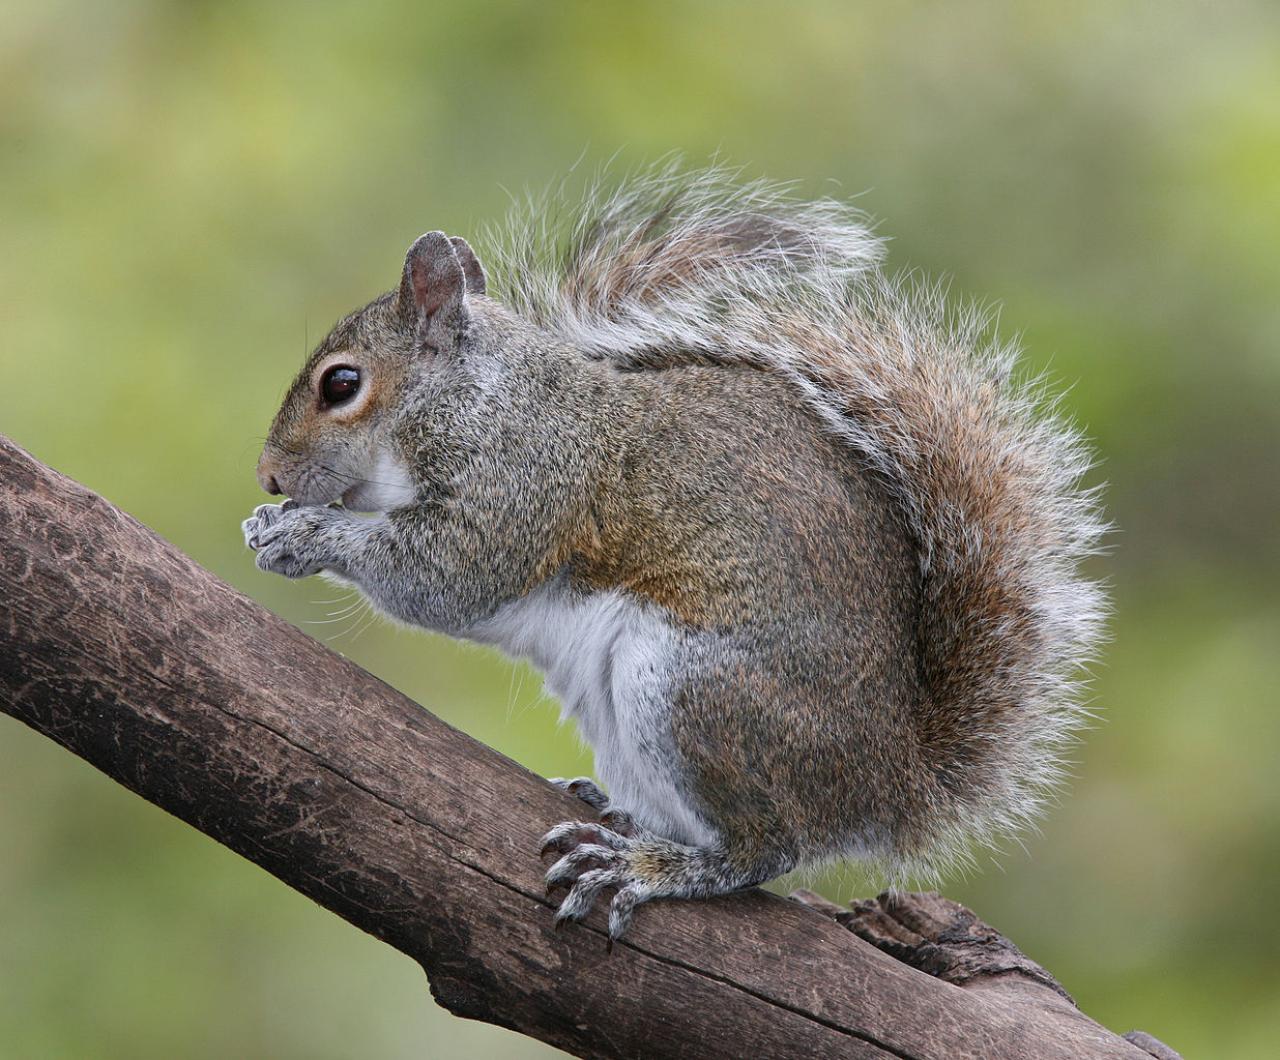 Gray squirrel feeding on a tree branch